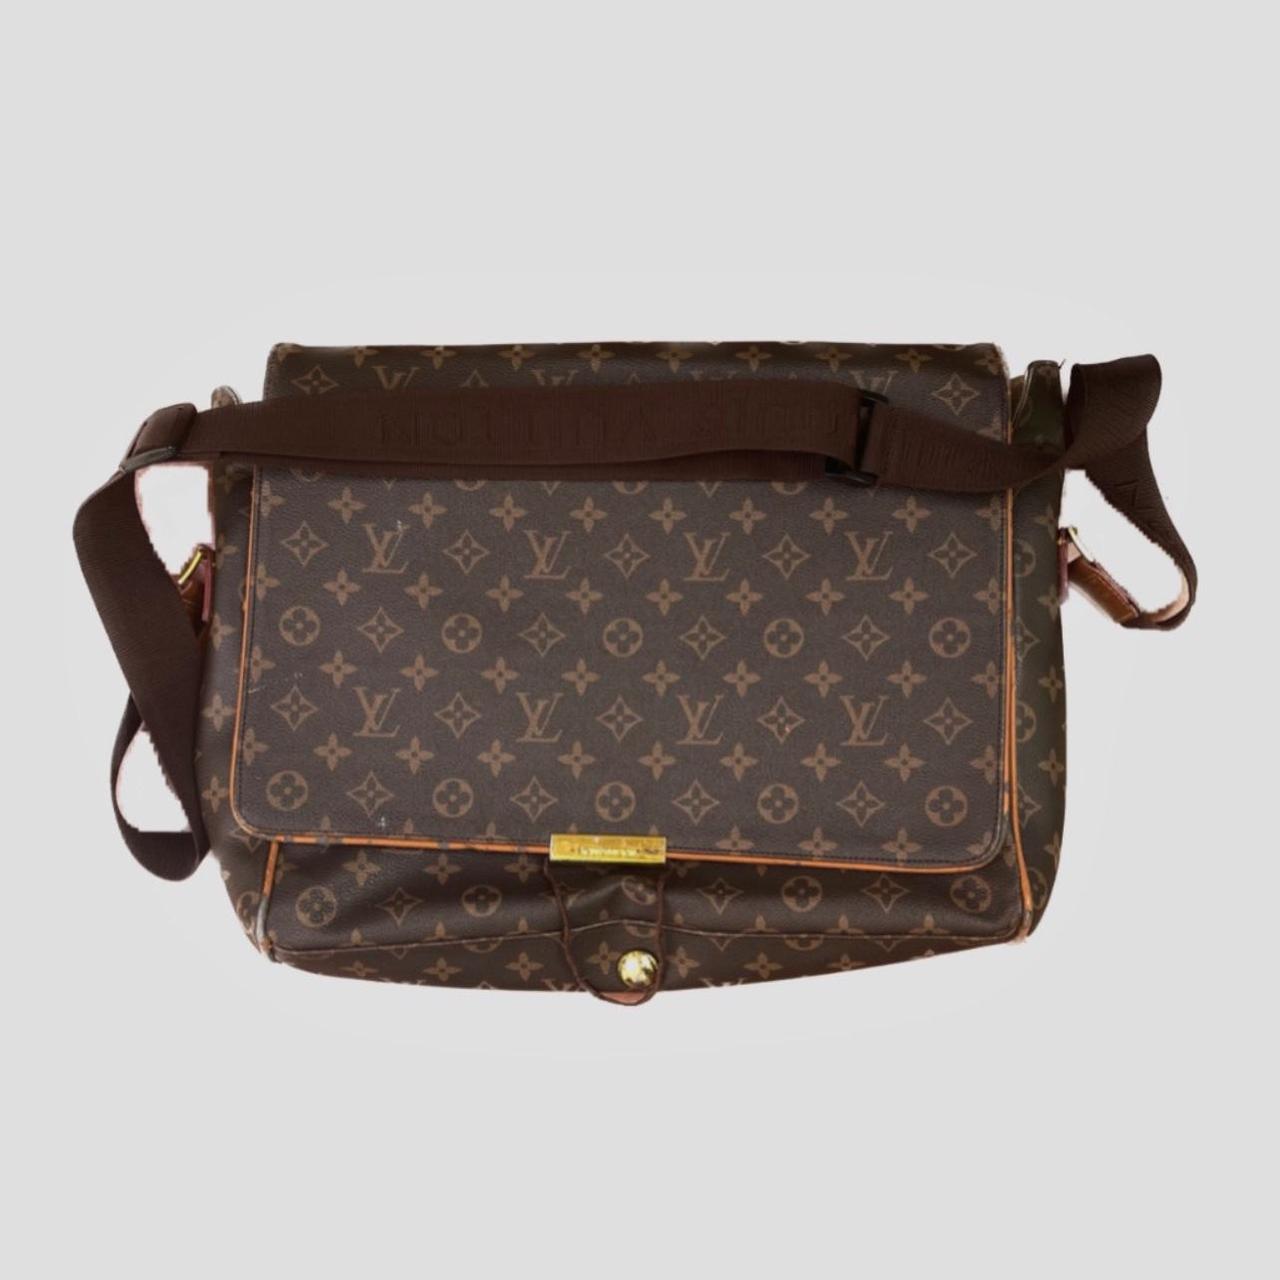 Louis Vuitton, messenger bag - Depop